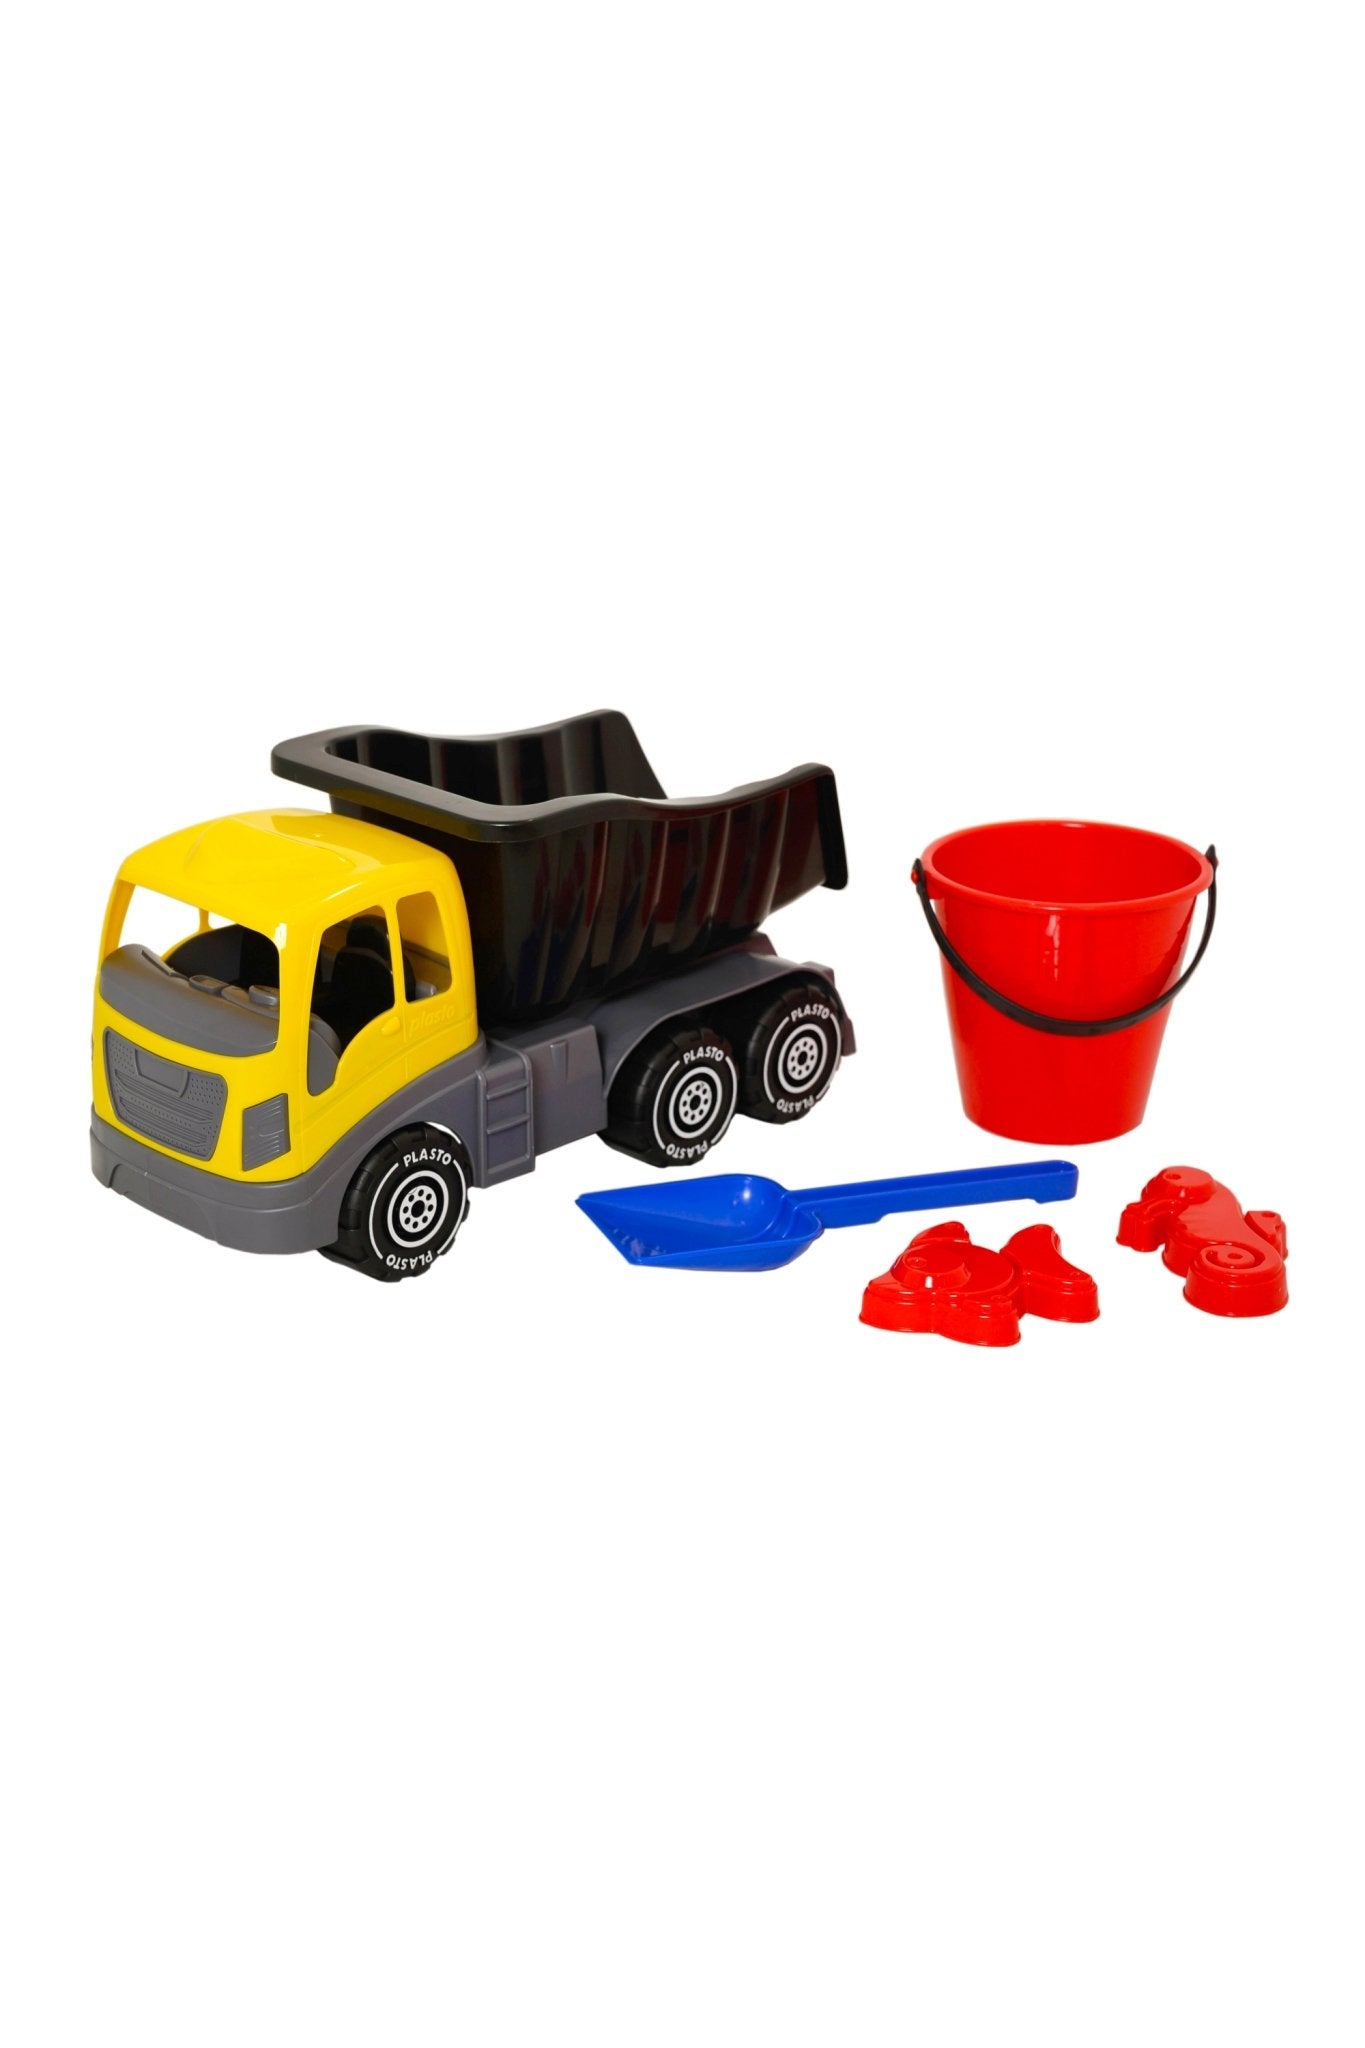 Dump truck with sand and beach toys - Koko-Kamel.com